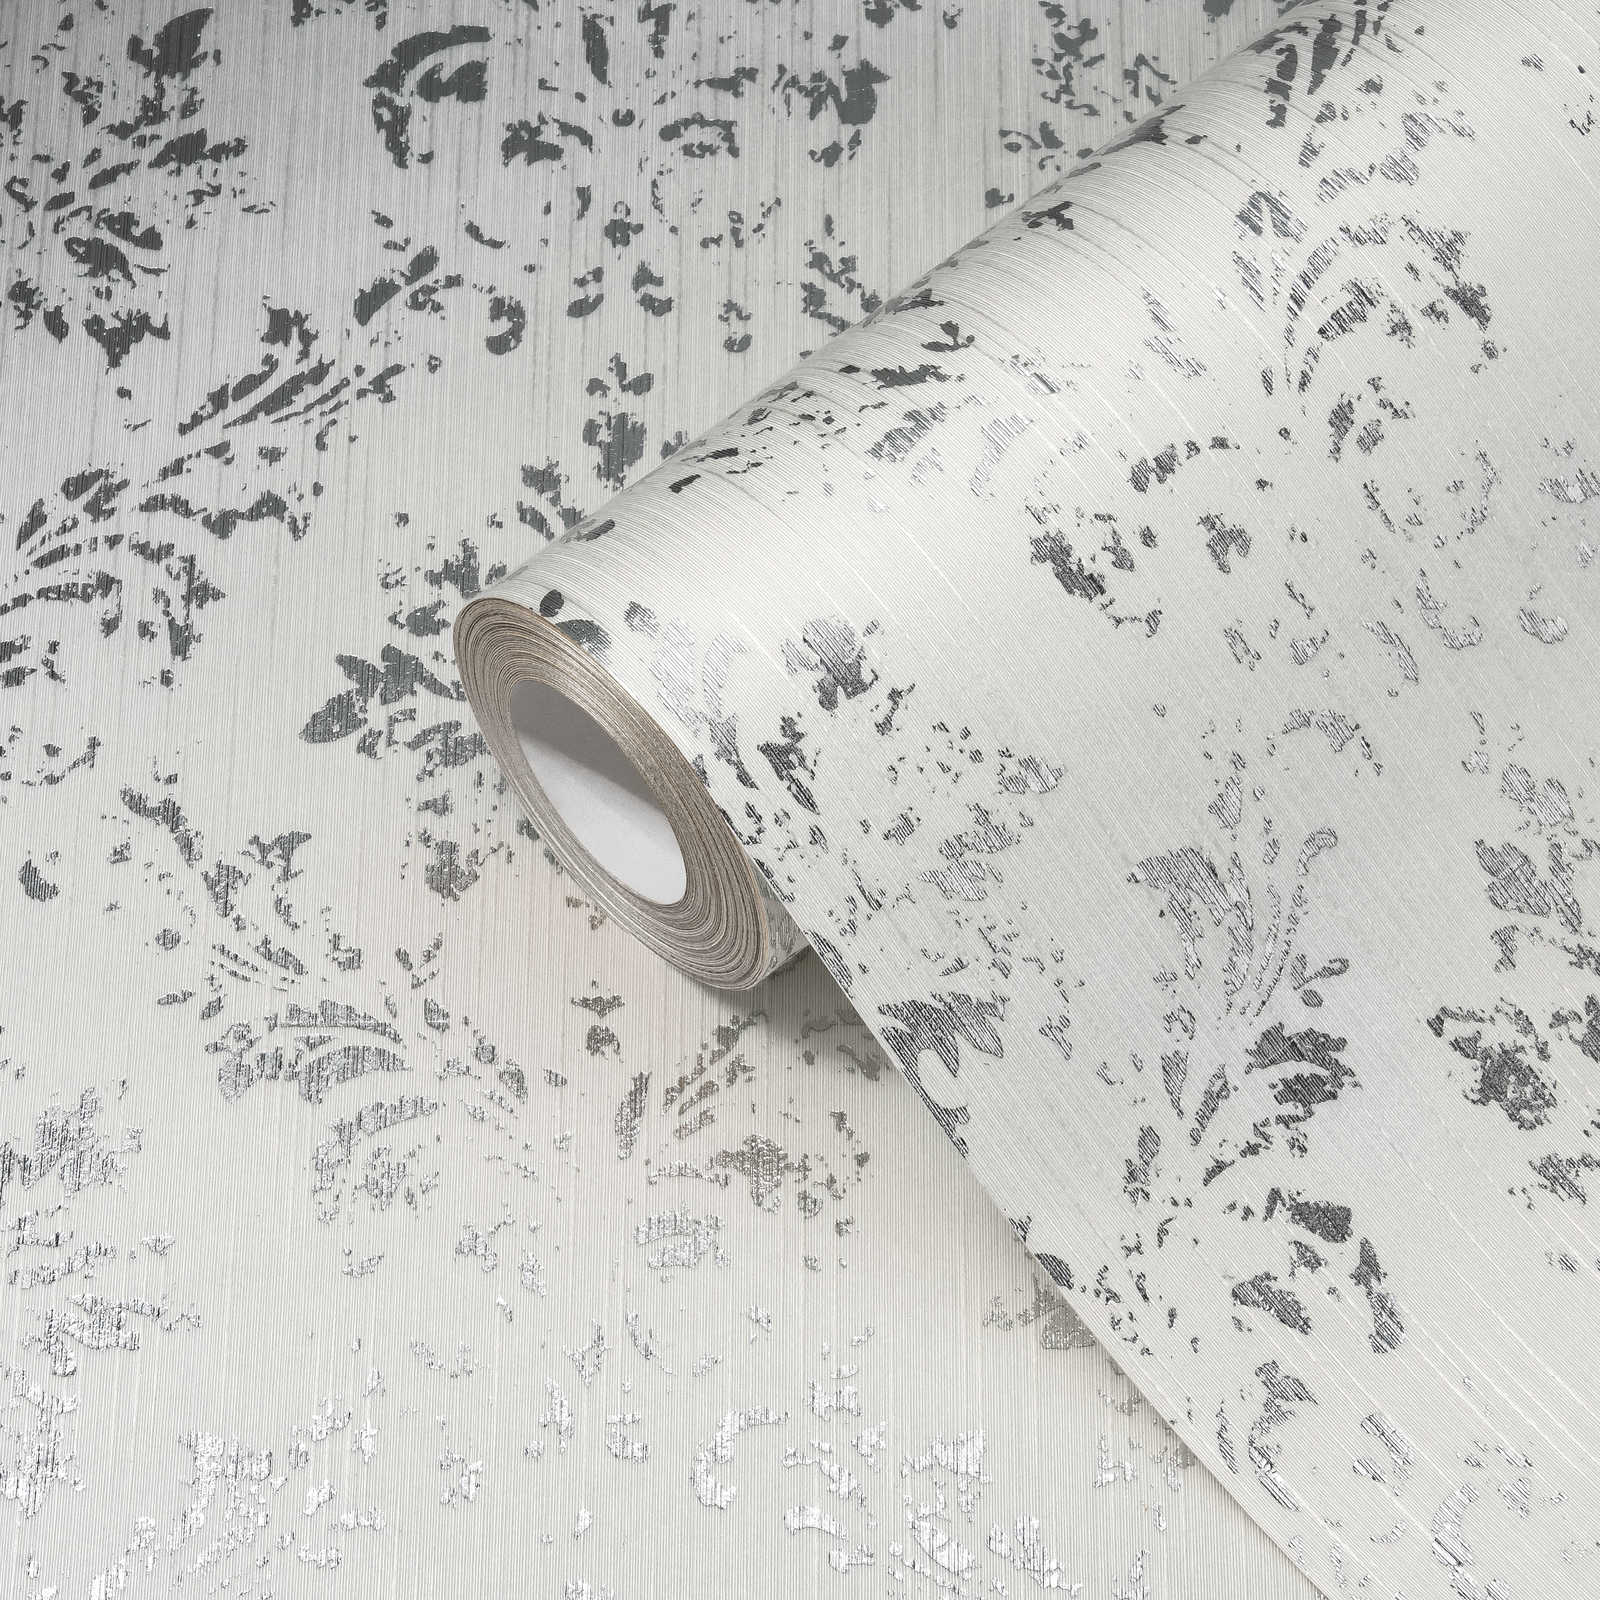             Tapete mit silbernen Ornamenten im Used-Look – Weiß, Silber
        